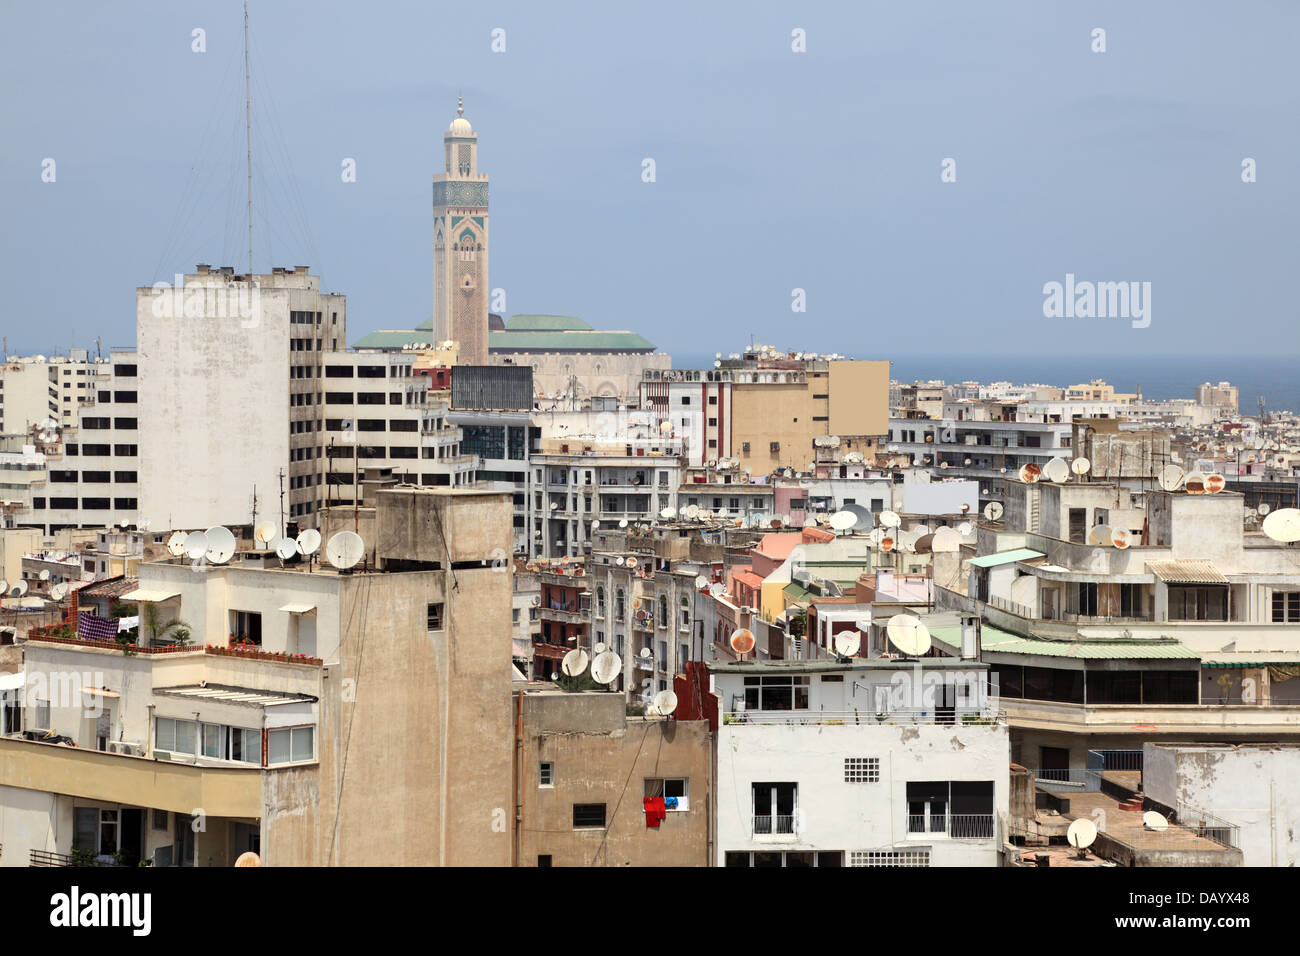 View over the medina of Casablanca, Morocco Stock Photo